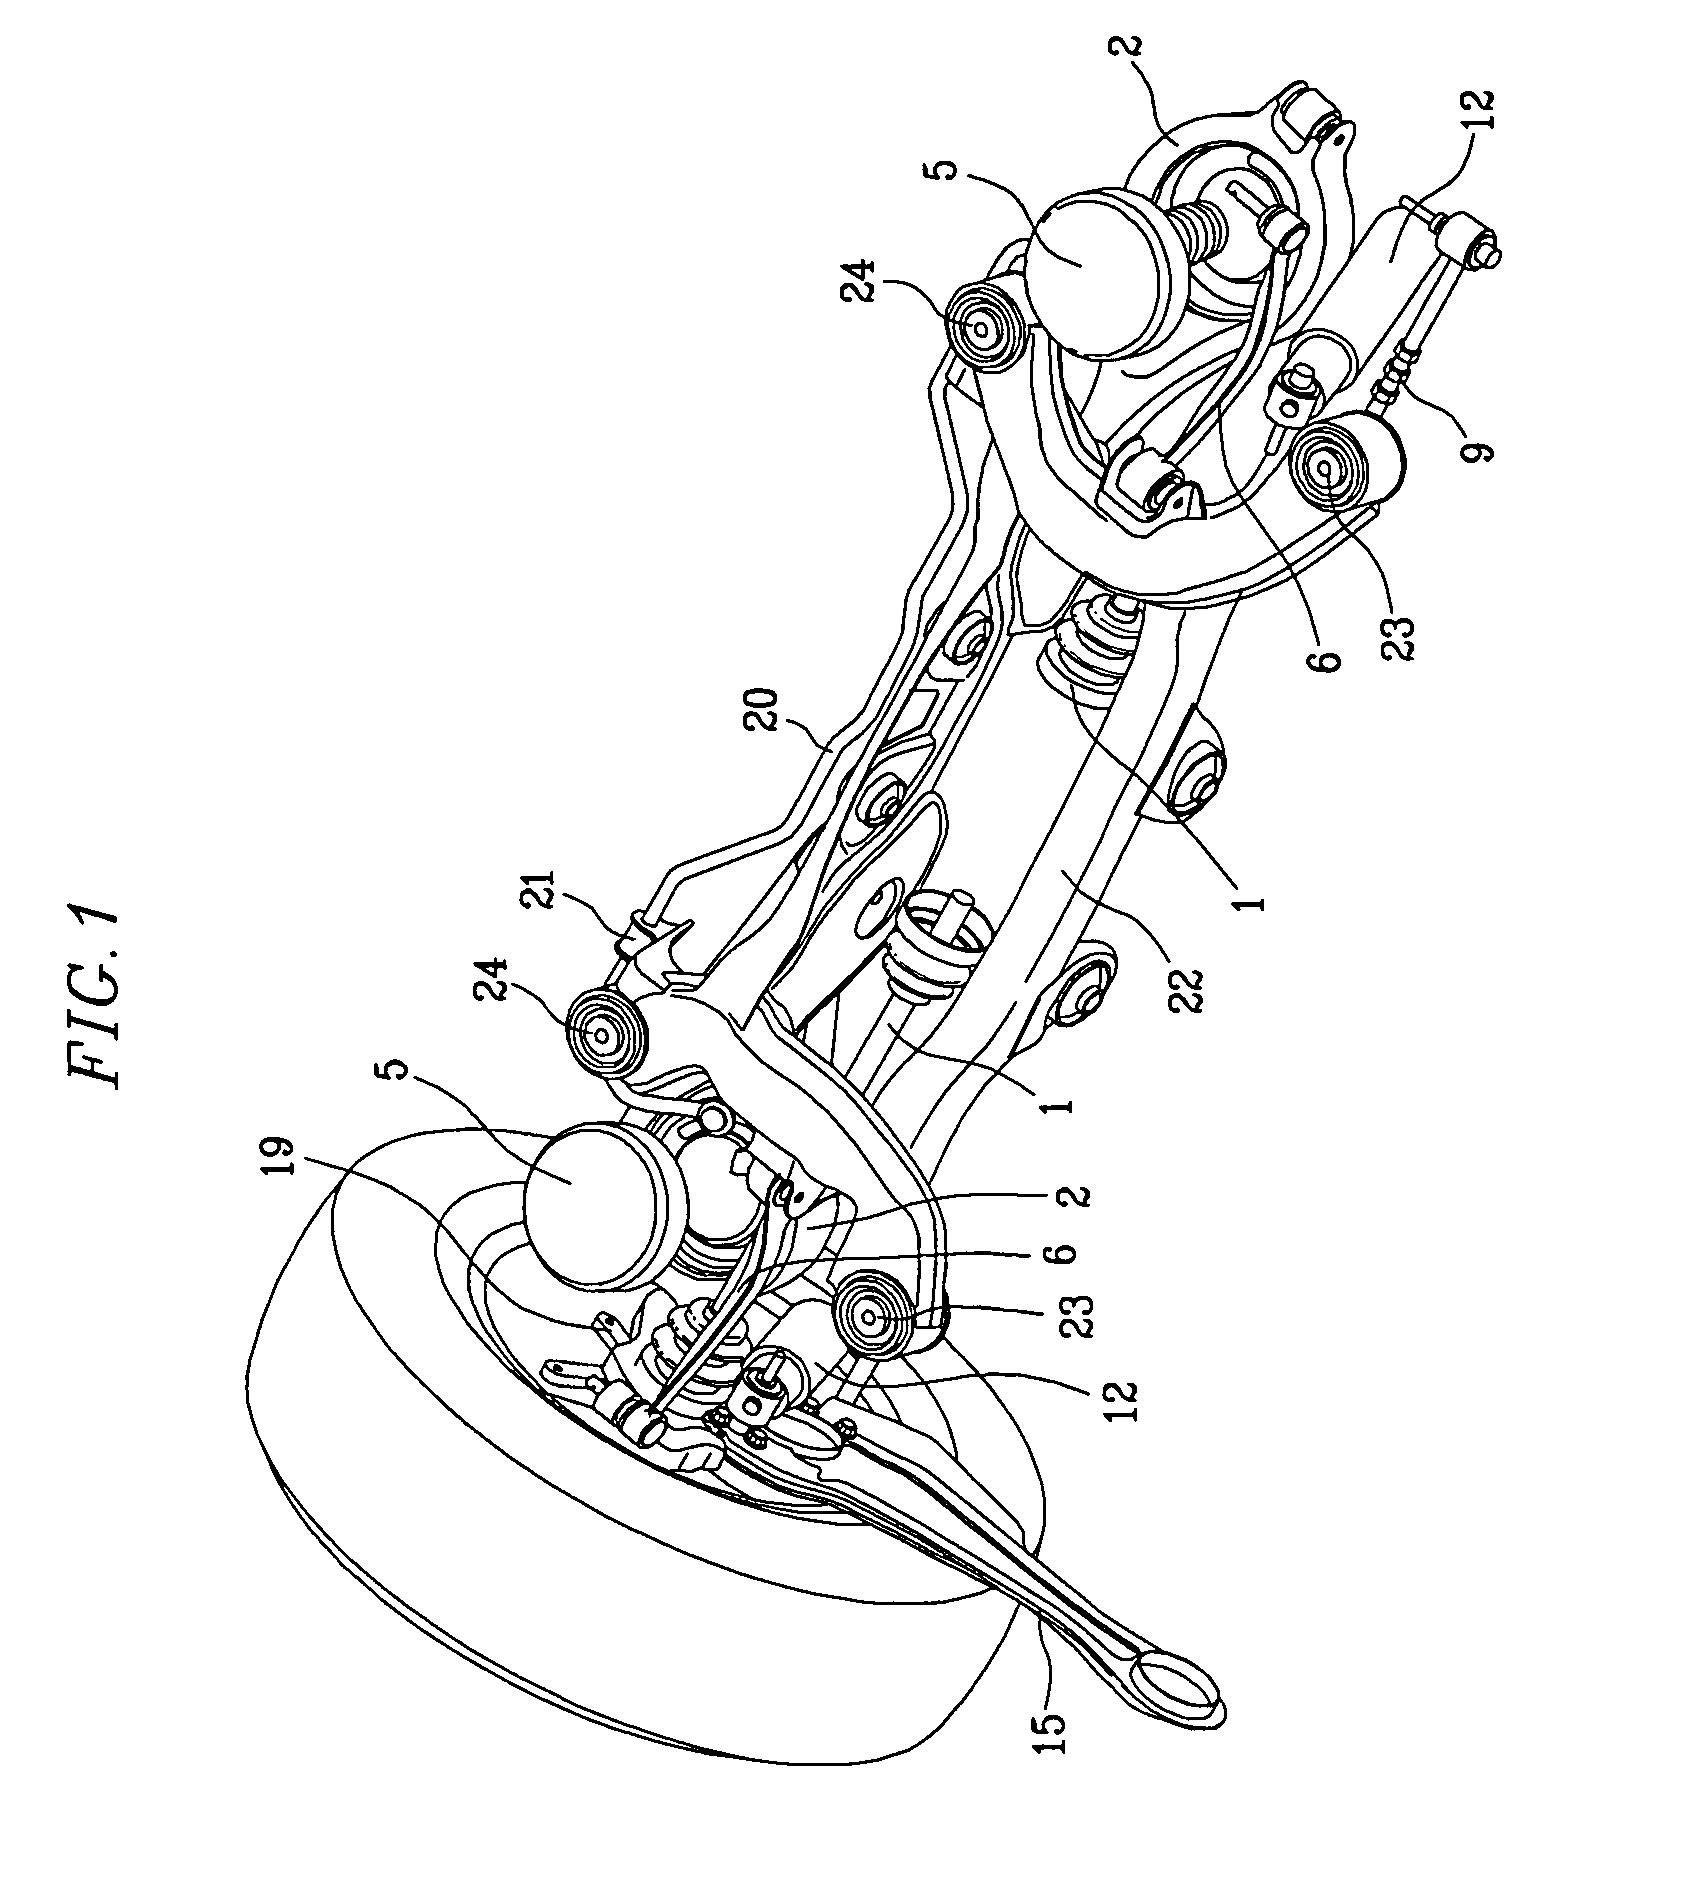 Rear wheel suspension apparatus